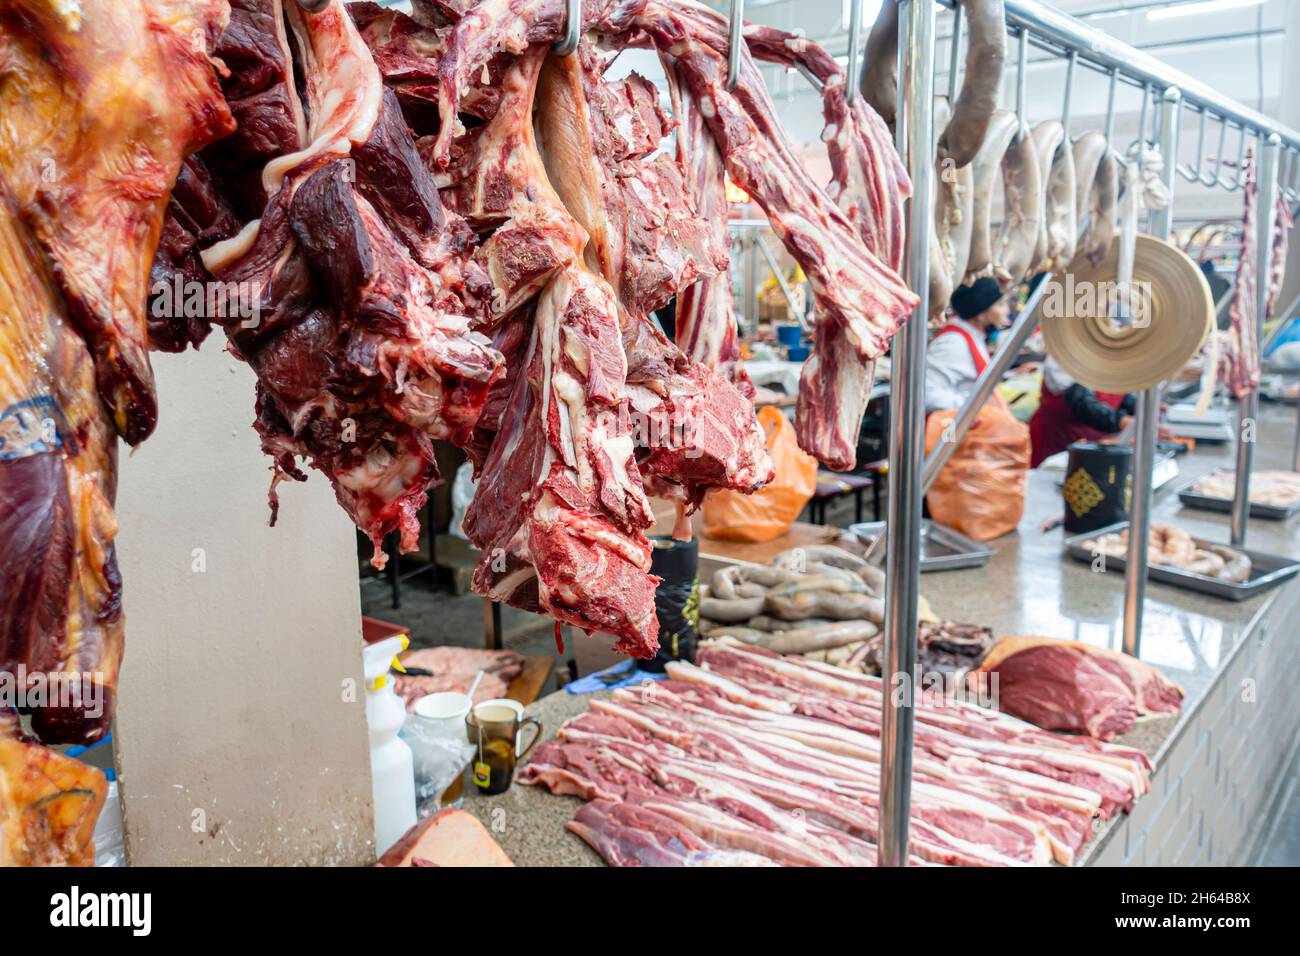 Auf Knochen aufgehängte, gehackte Stücke Pferdefleisch, die auf dem Altyn Orda-Markt, dem größten Markt in Almaty, Kasachstan, ausgestellt werden Stockfoto